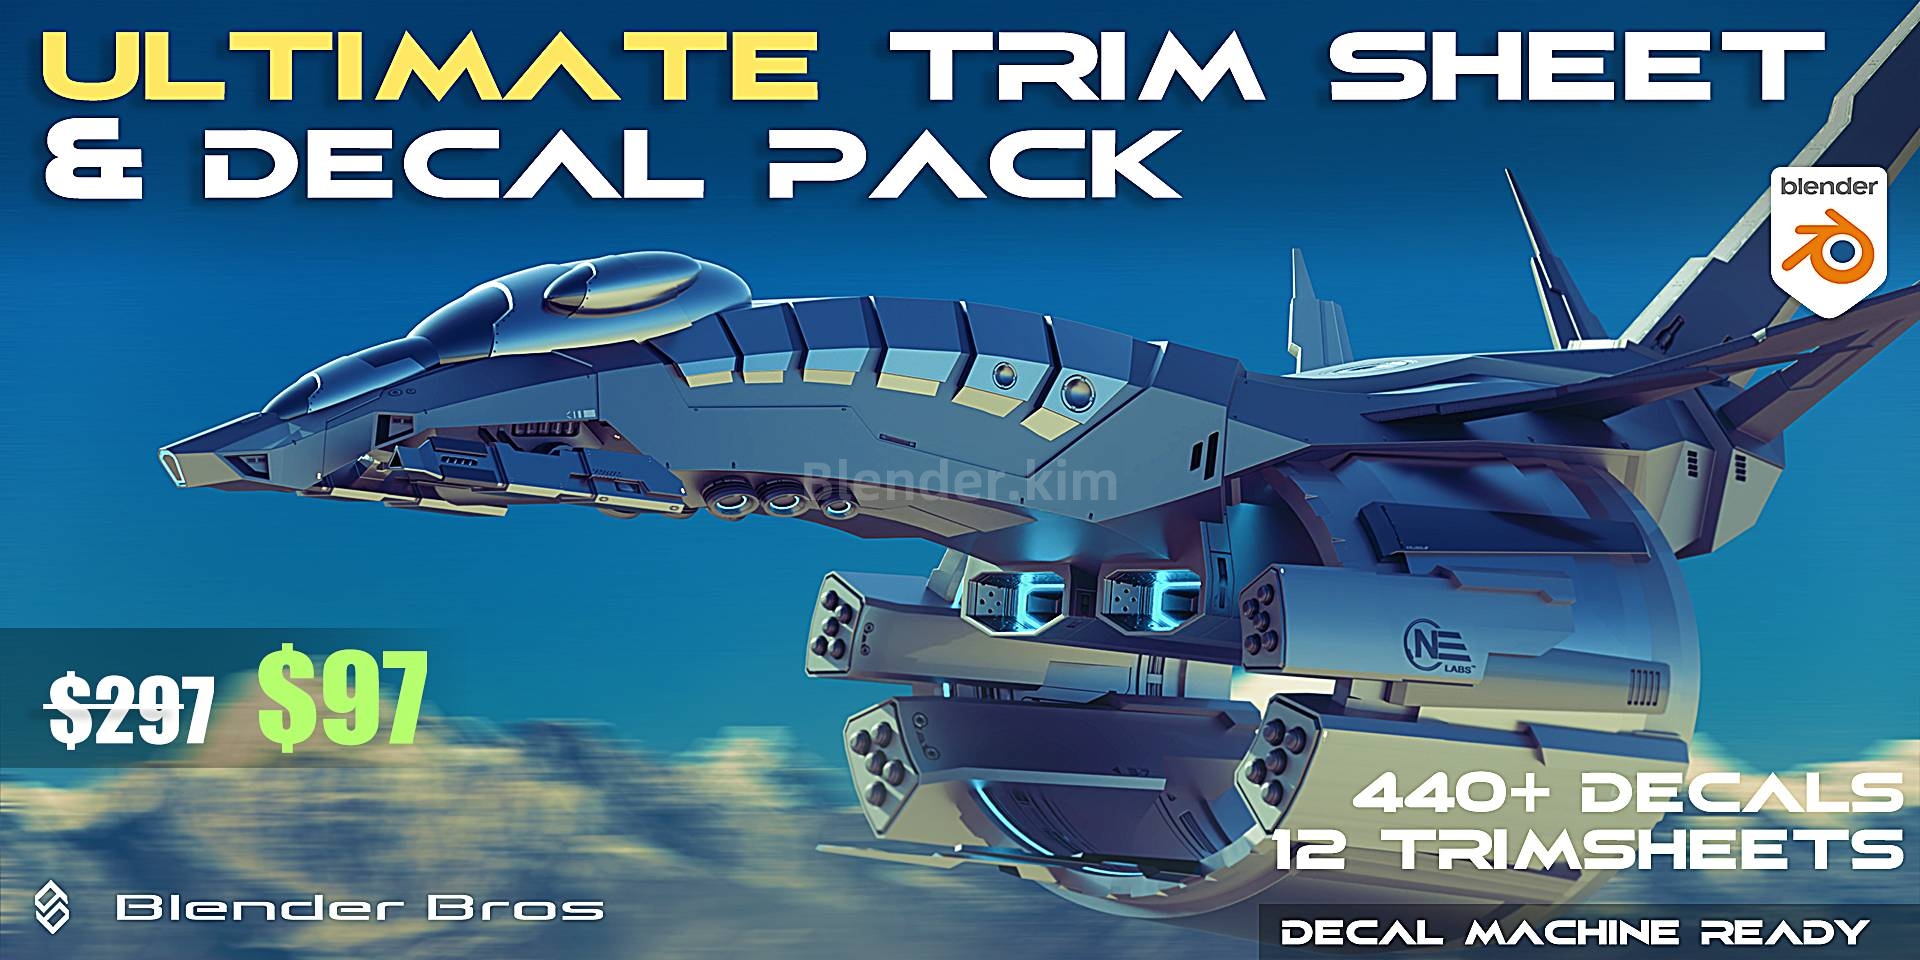 机身贴花装饰贴图材质预设 Ultimate Trim Sheet & Decal Pack-魔酷网